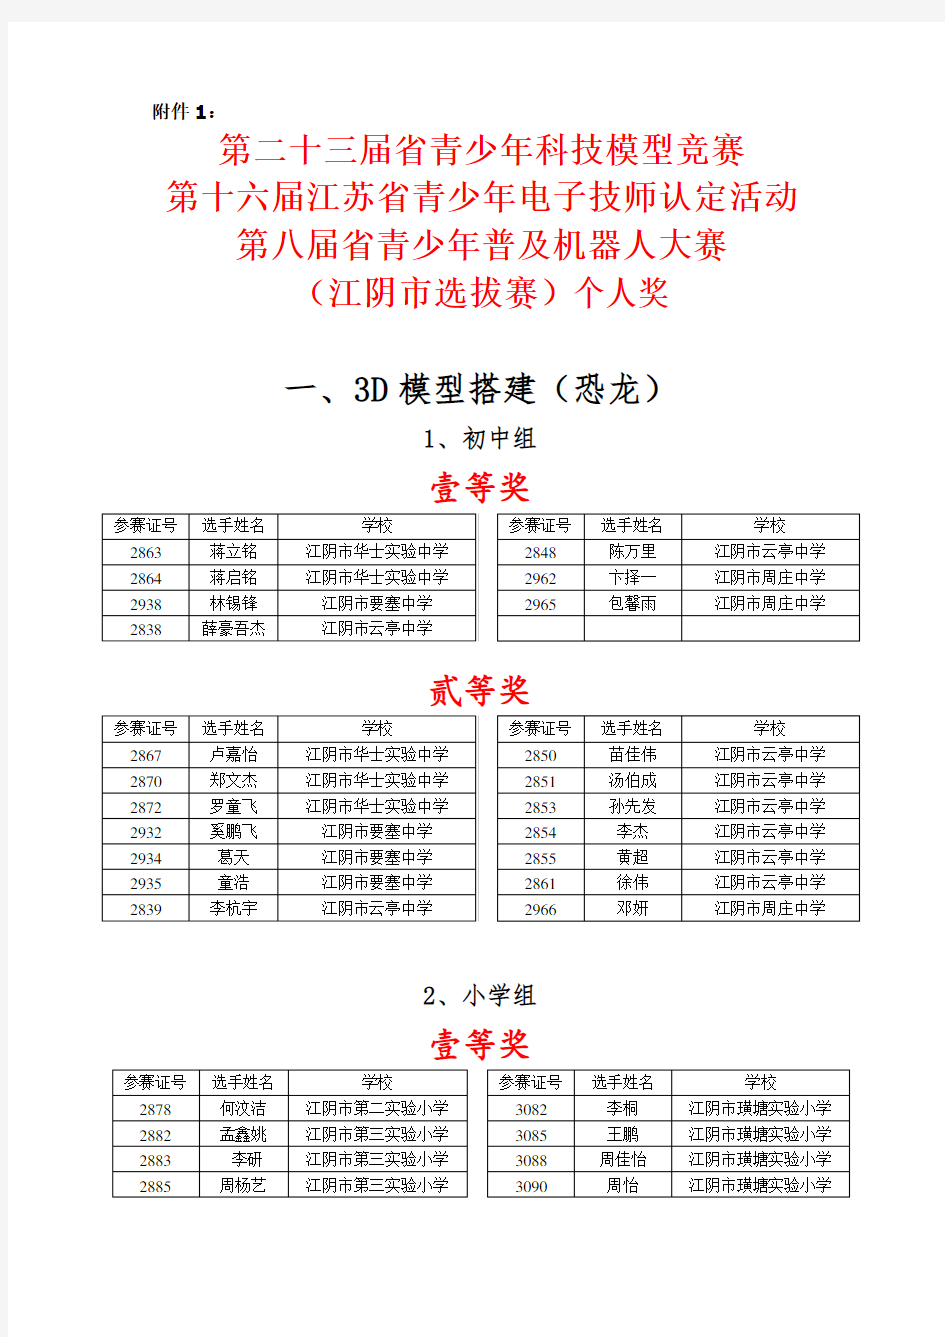 江苏省青少年普及机器人大赛、江苏省青少年科技模型竞赛